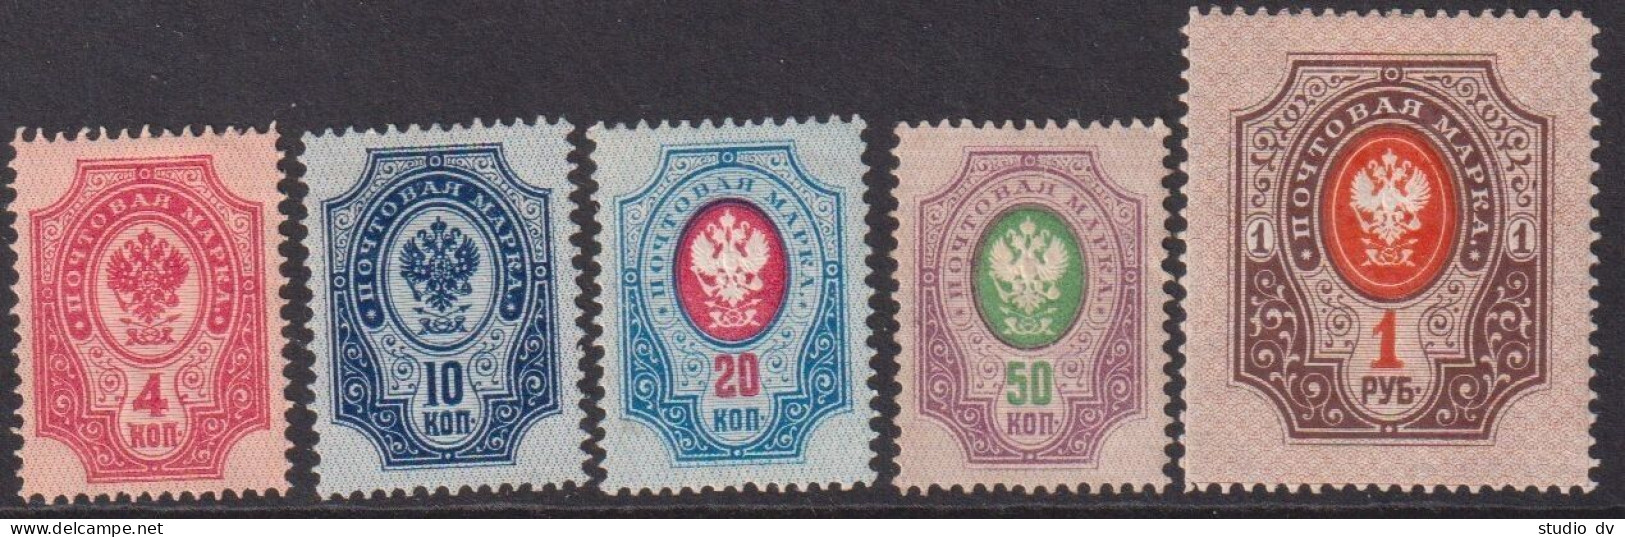 Russia 1889 10th Issue 4-50k, 1R Horizontal Watermark, Mi 40x-44x MLH - Ongebruikt